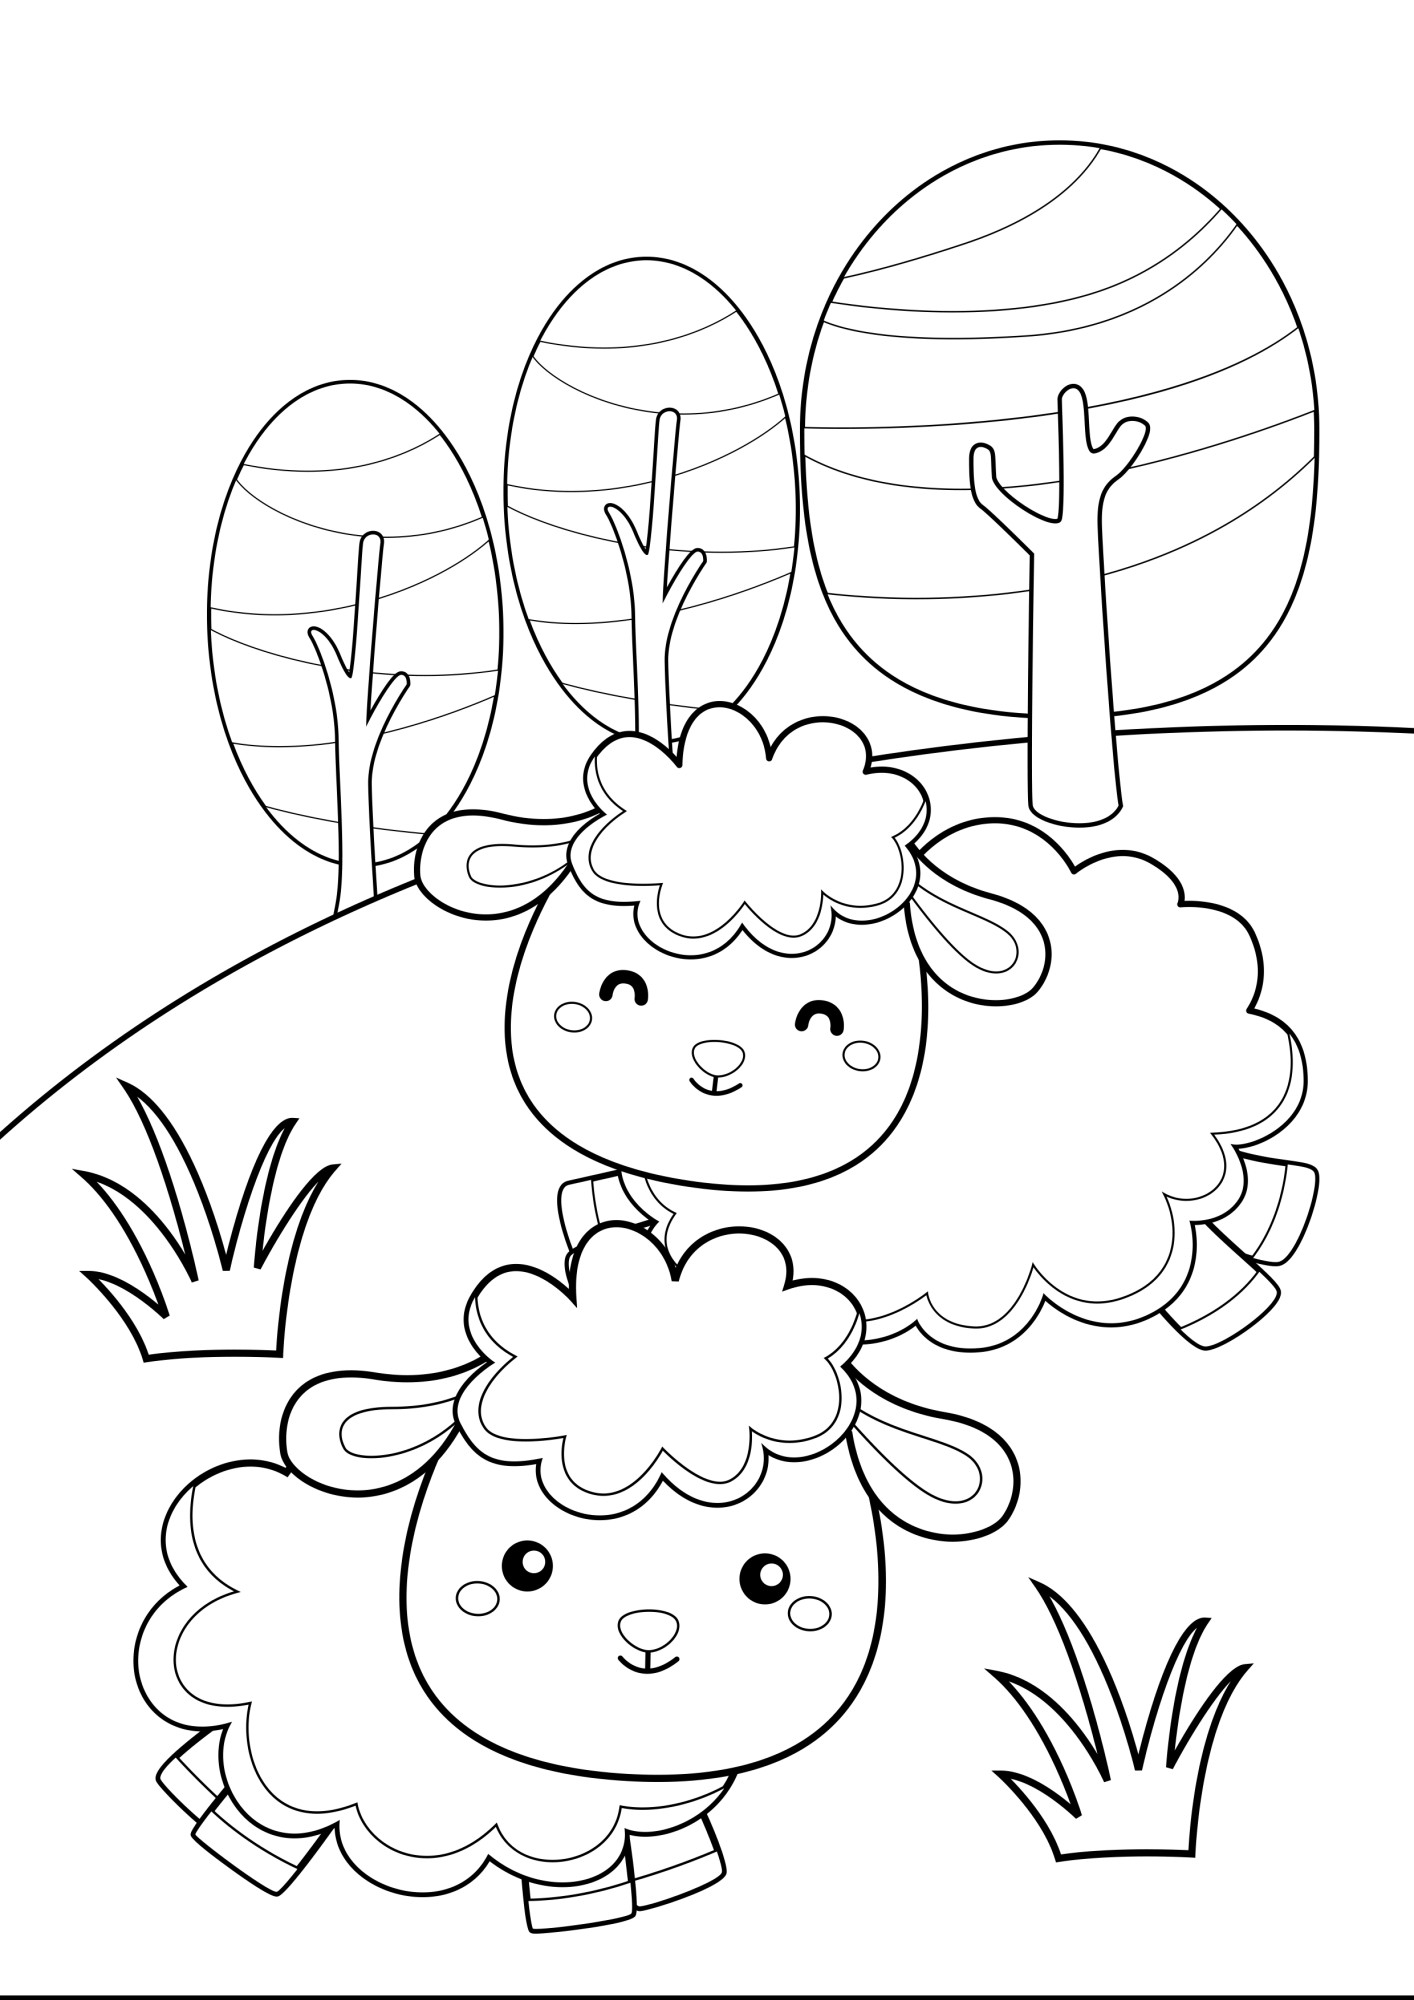 Раскраска для детей: две овечки на лугу играют